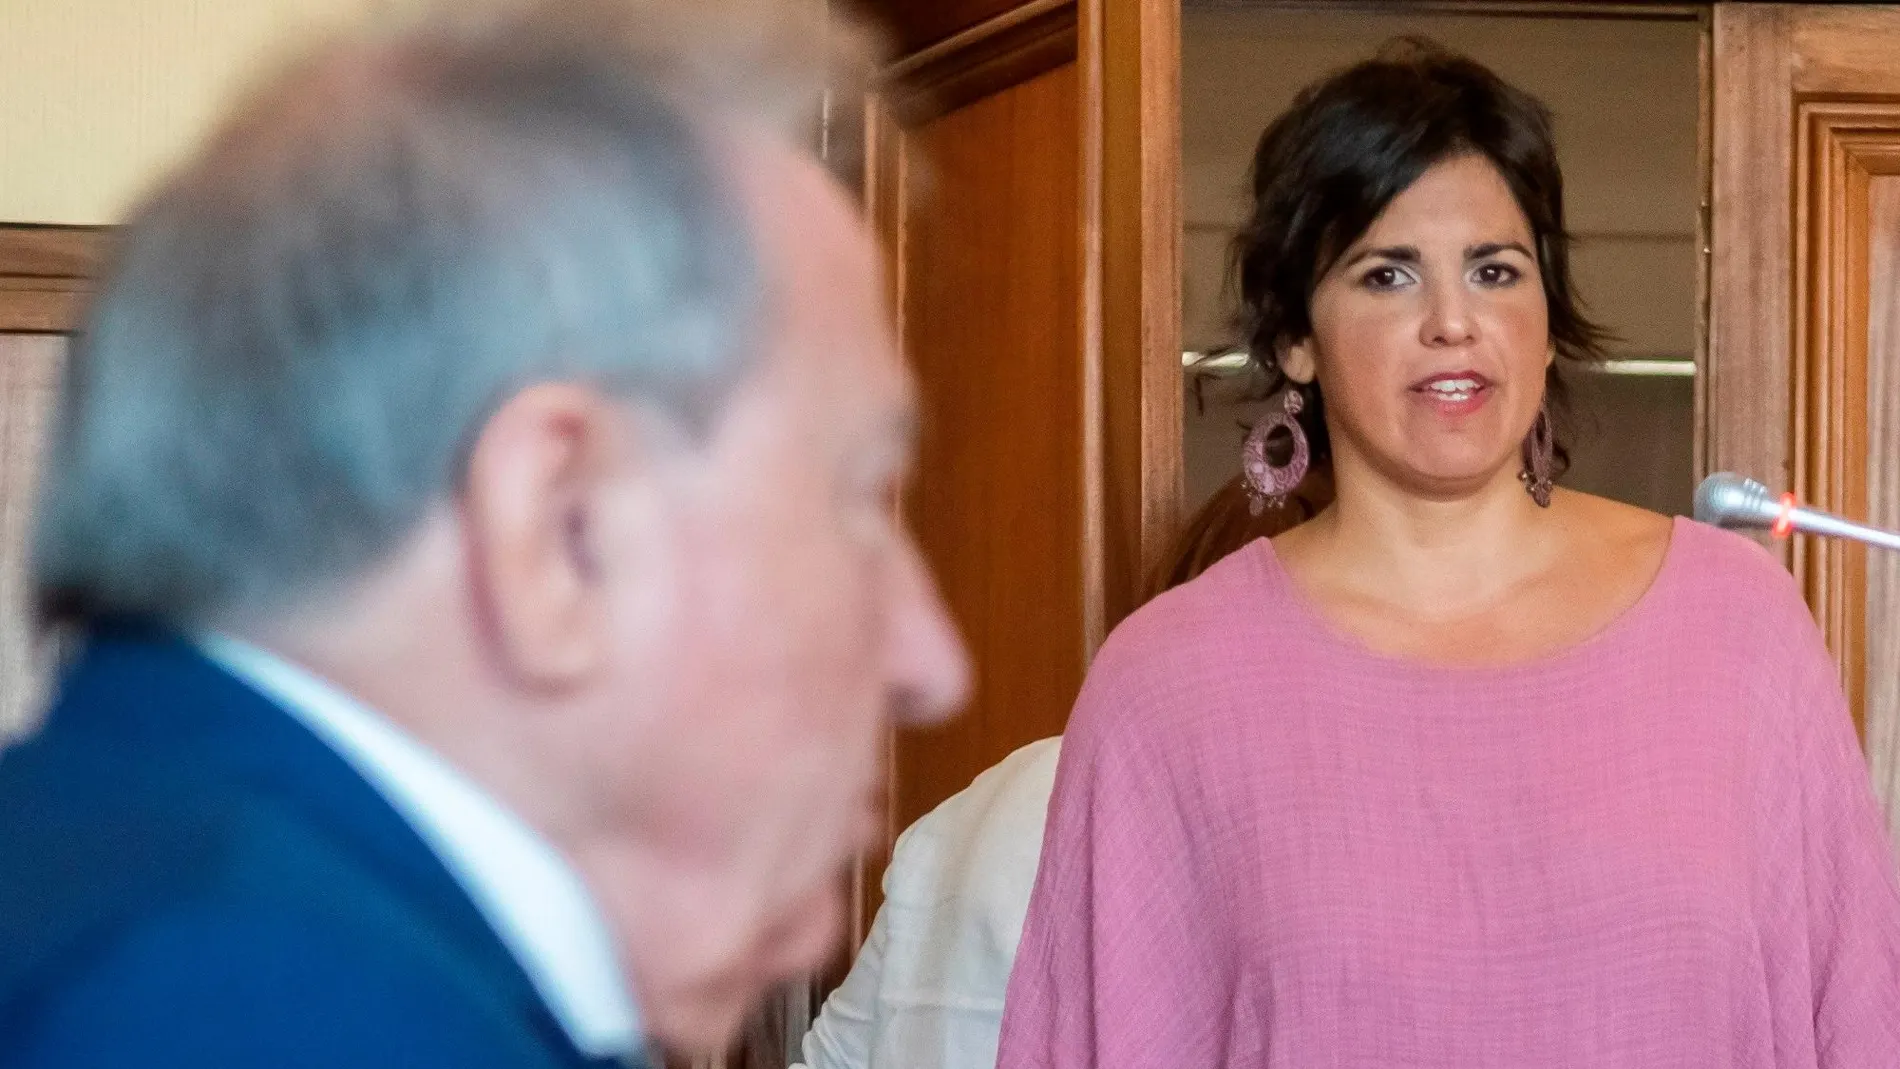 La líder de Adelante Andalucía entrando al juicio contra el empresario que la acosó / Efe